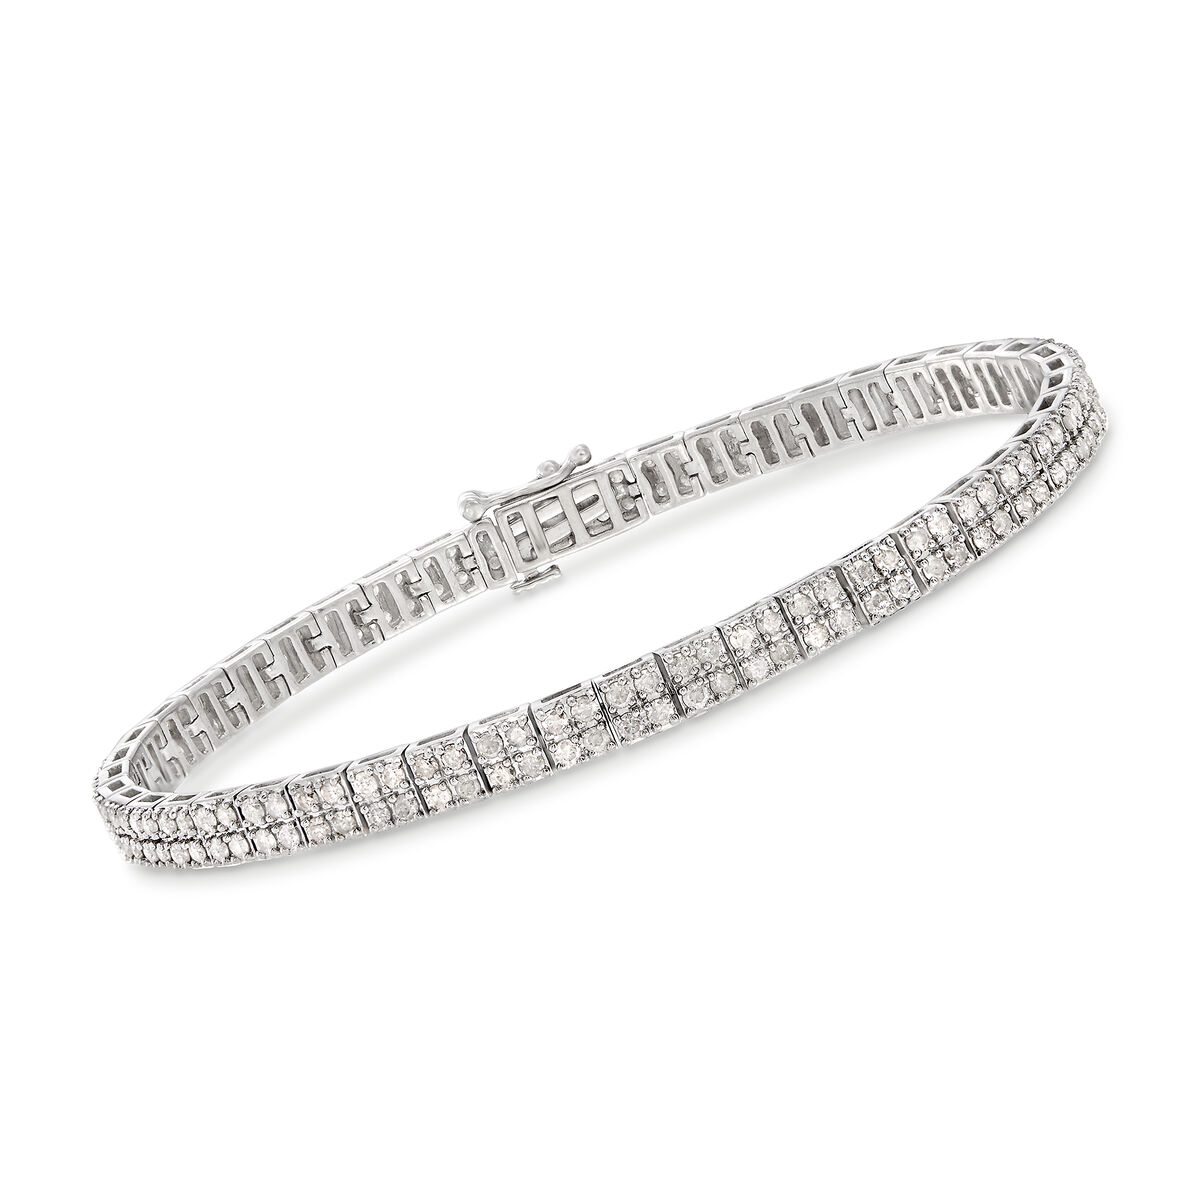 3.00 ct. t.w. Diamond Double-Row Bracelet in Sterling Silver. 7"